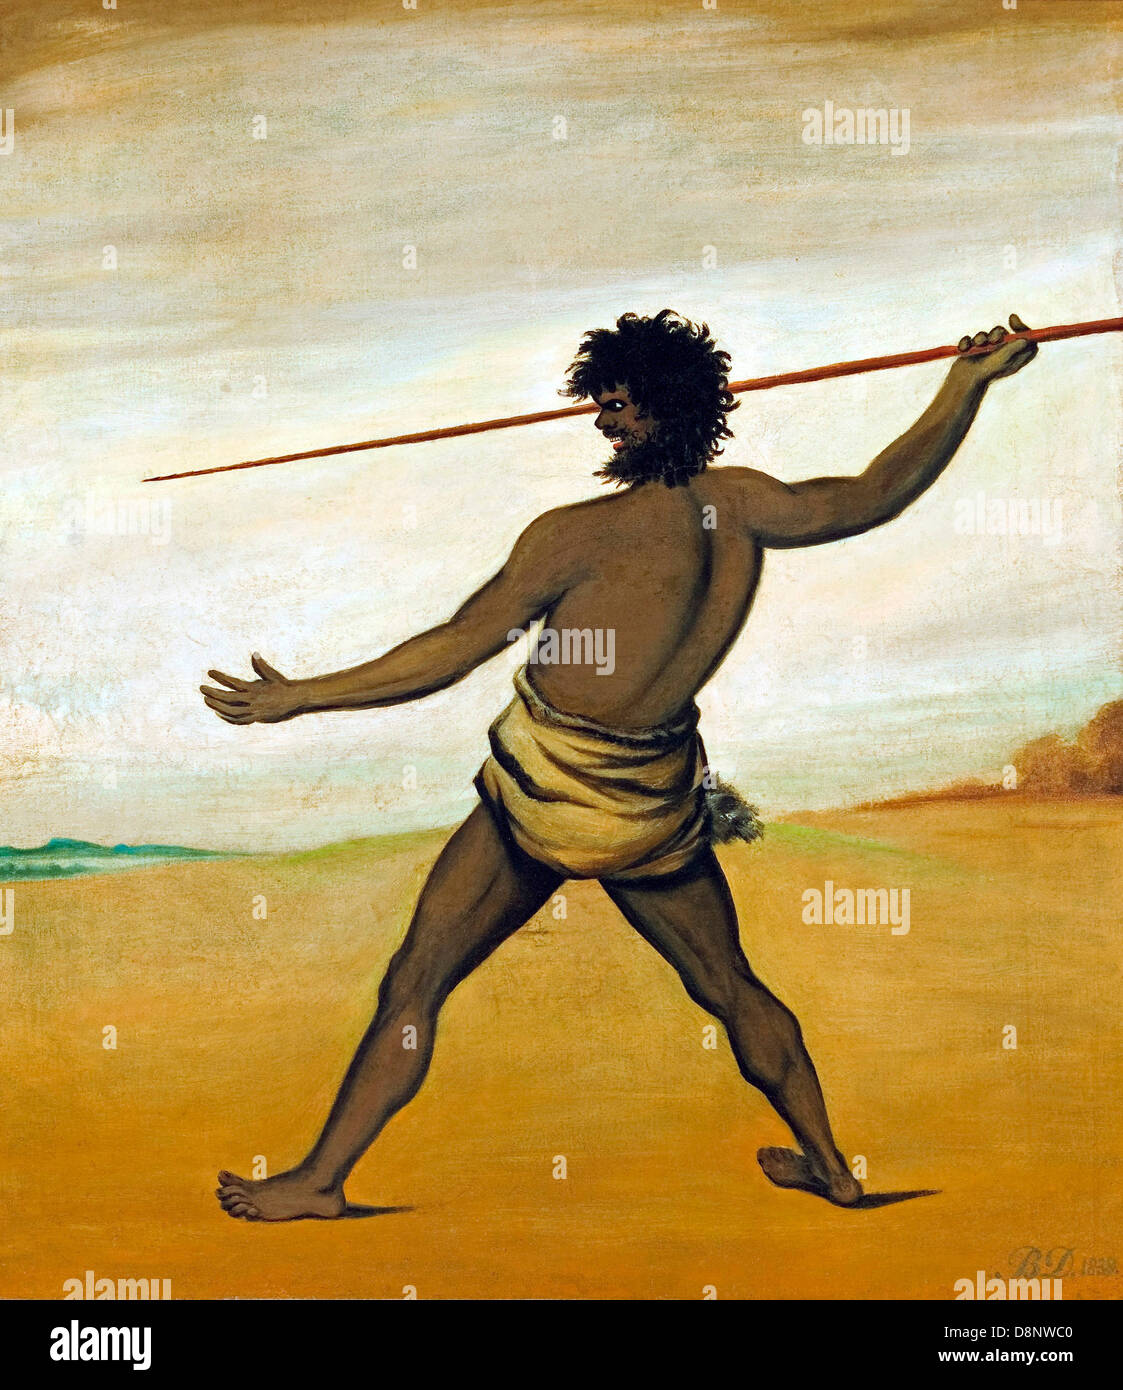 Benjamin Duterrau, Timmy, un aborigeno della Tasmania, gettando una lancia 1838 olio su tela. Galleria d'Arte del South Australia Foto Stock